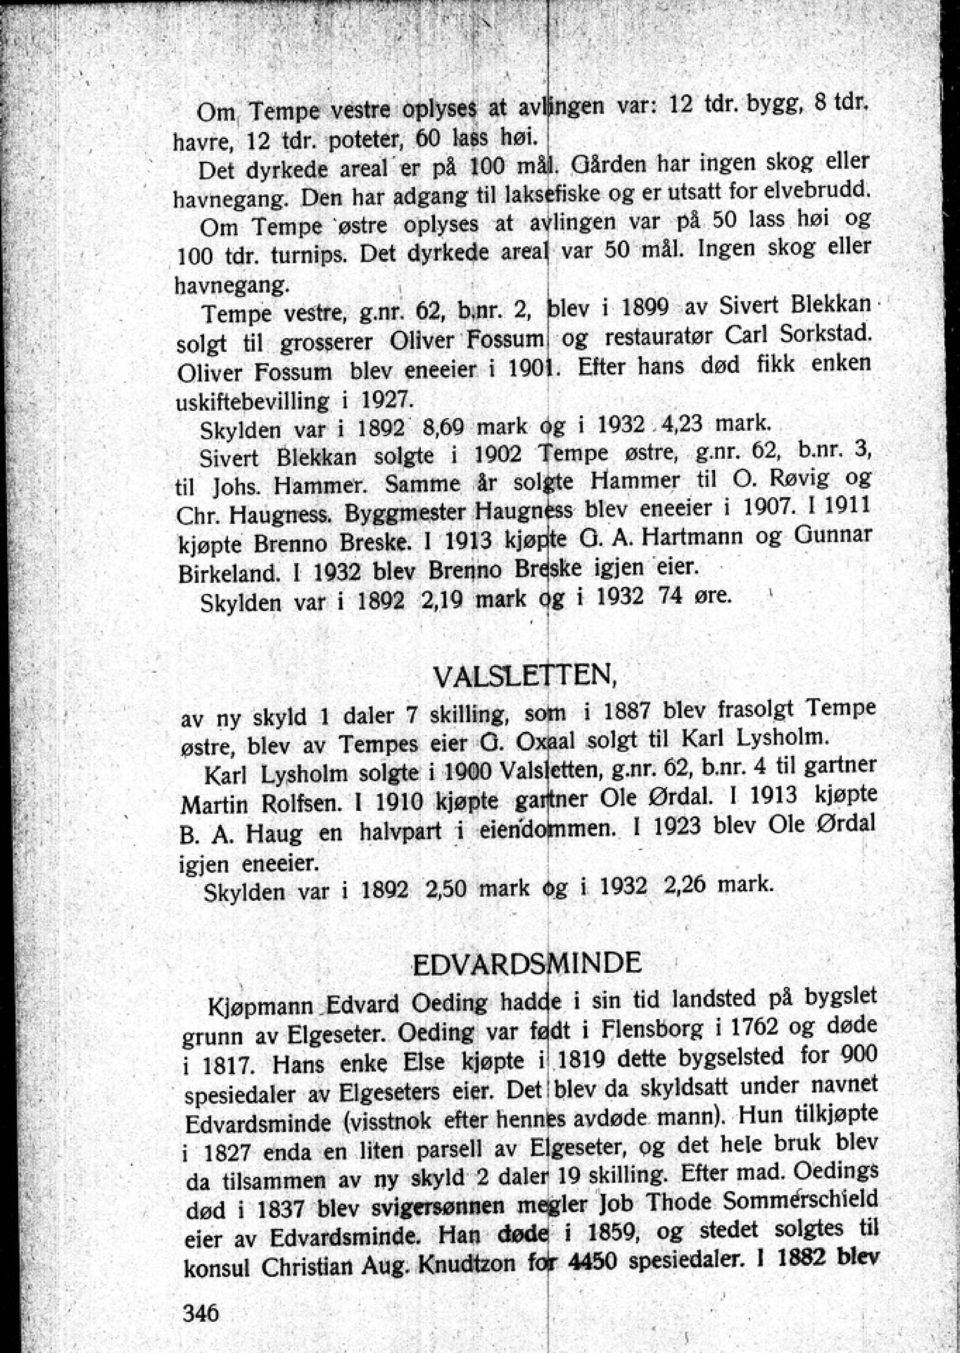 2 i 1899 av Sivert Blekkan. solgt til groøerer OlIveT. ~~'~~ I 0i restauratør Carl Sorkstad. Oliver Fossum blev eneeier i. Efter hans død fikk enken uskiftebevilling i 1927.